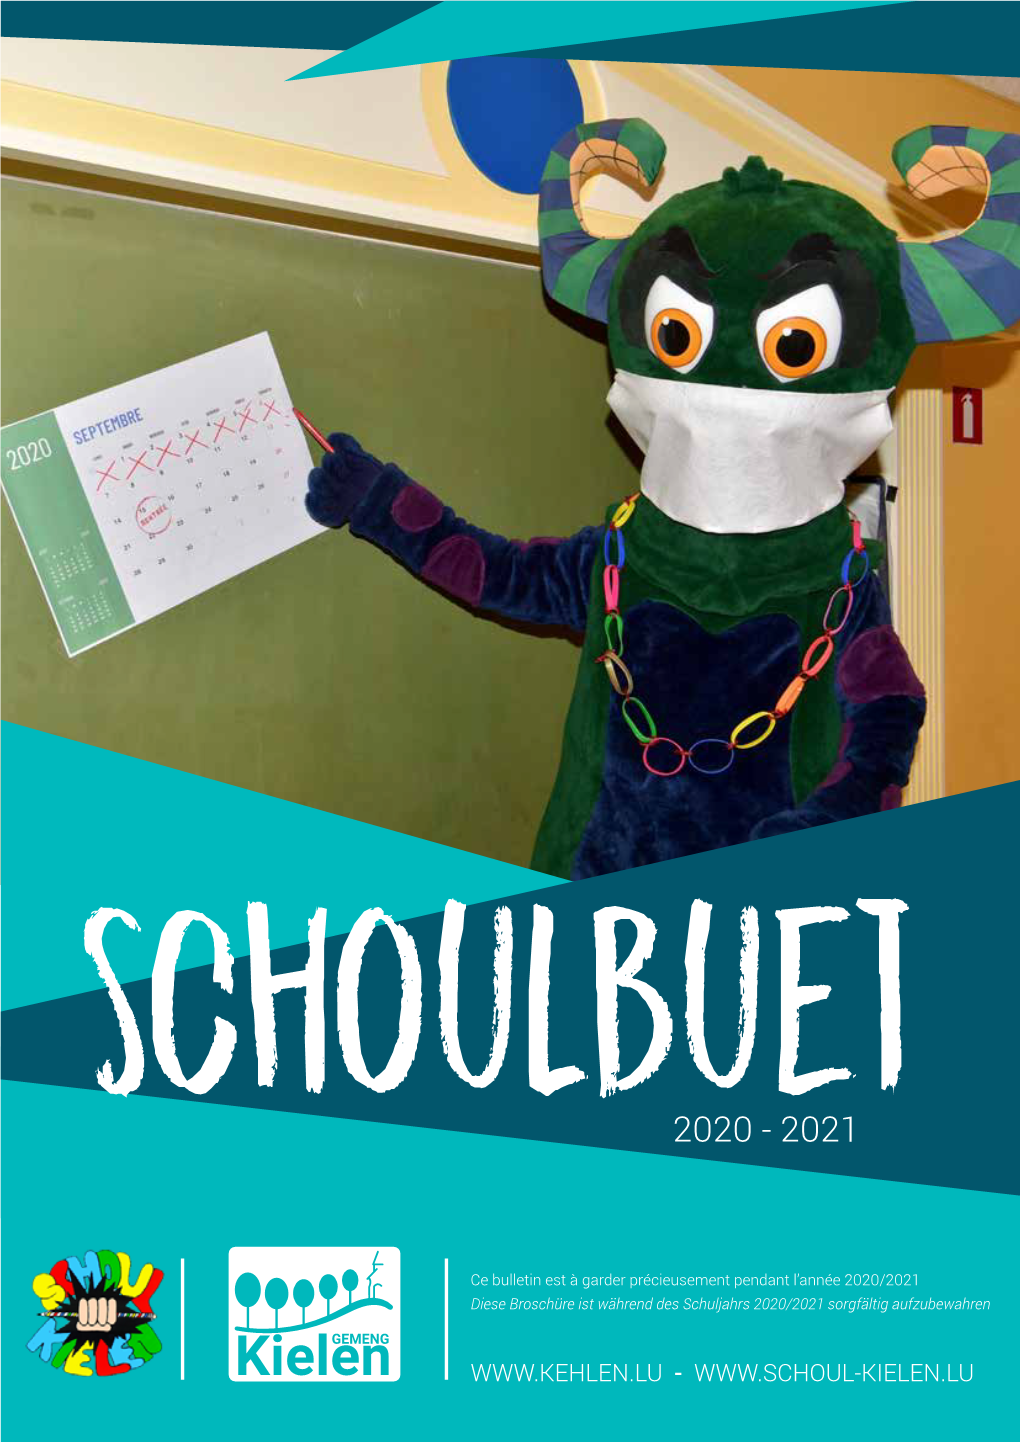 Schoulbuet 2020-2021